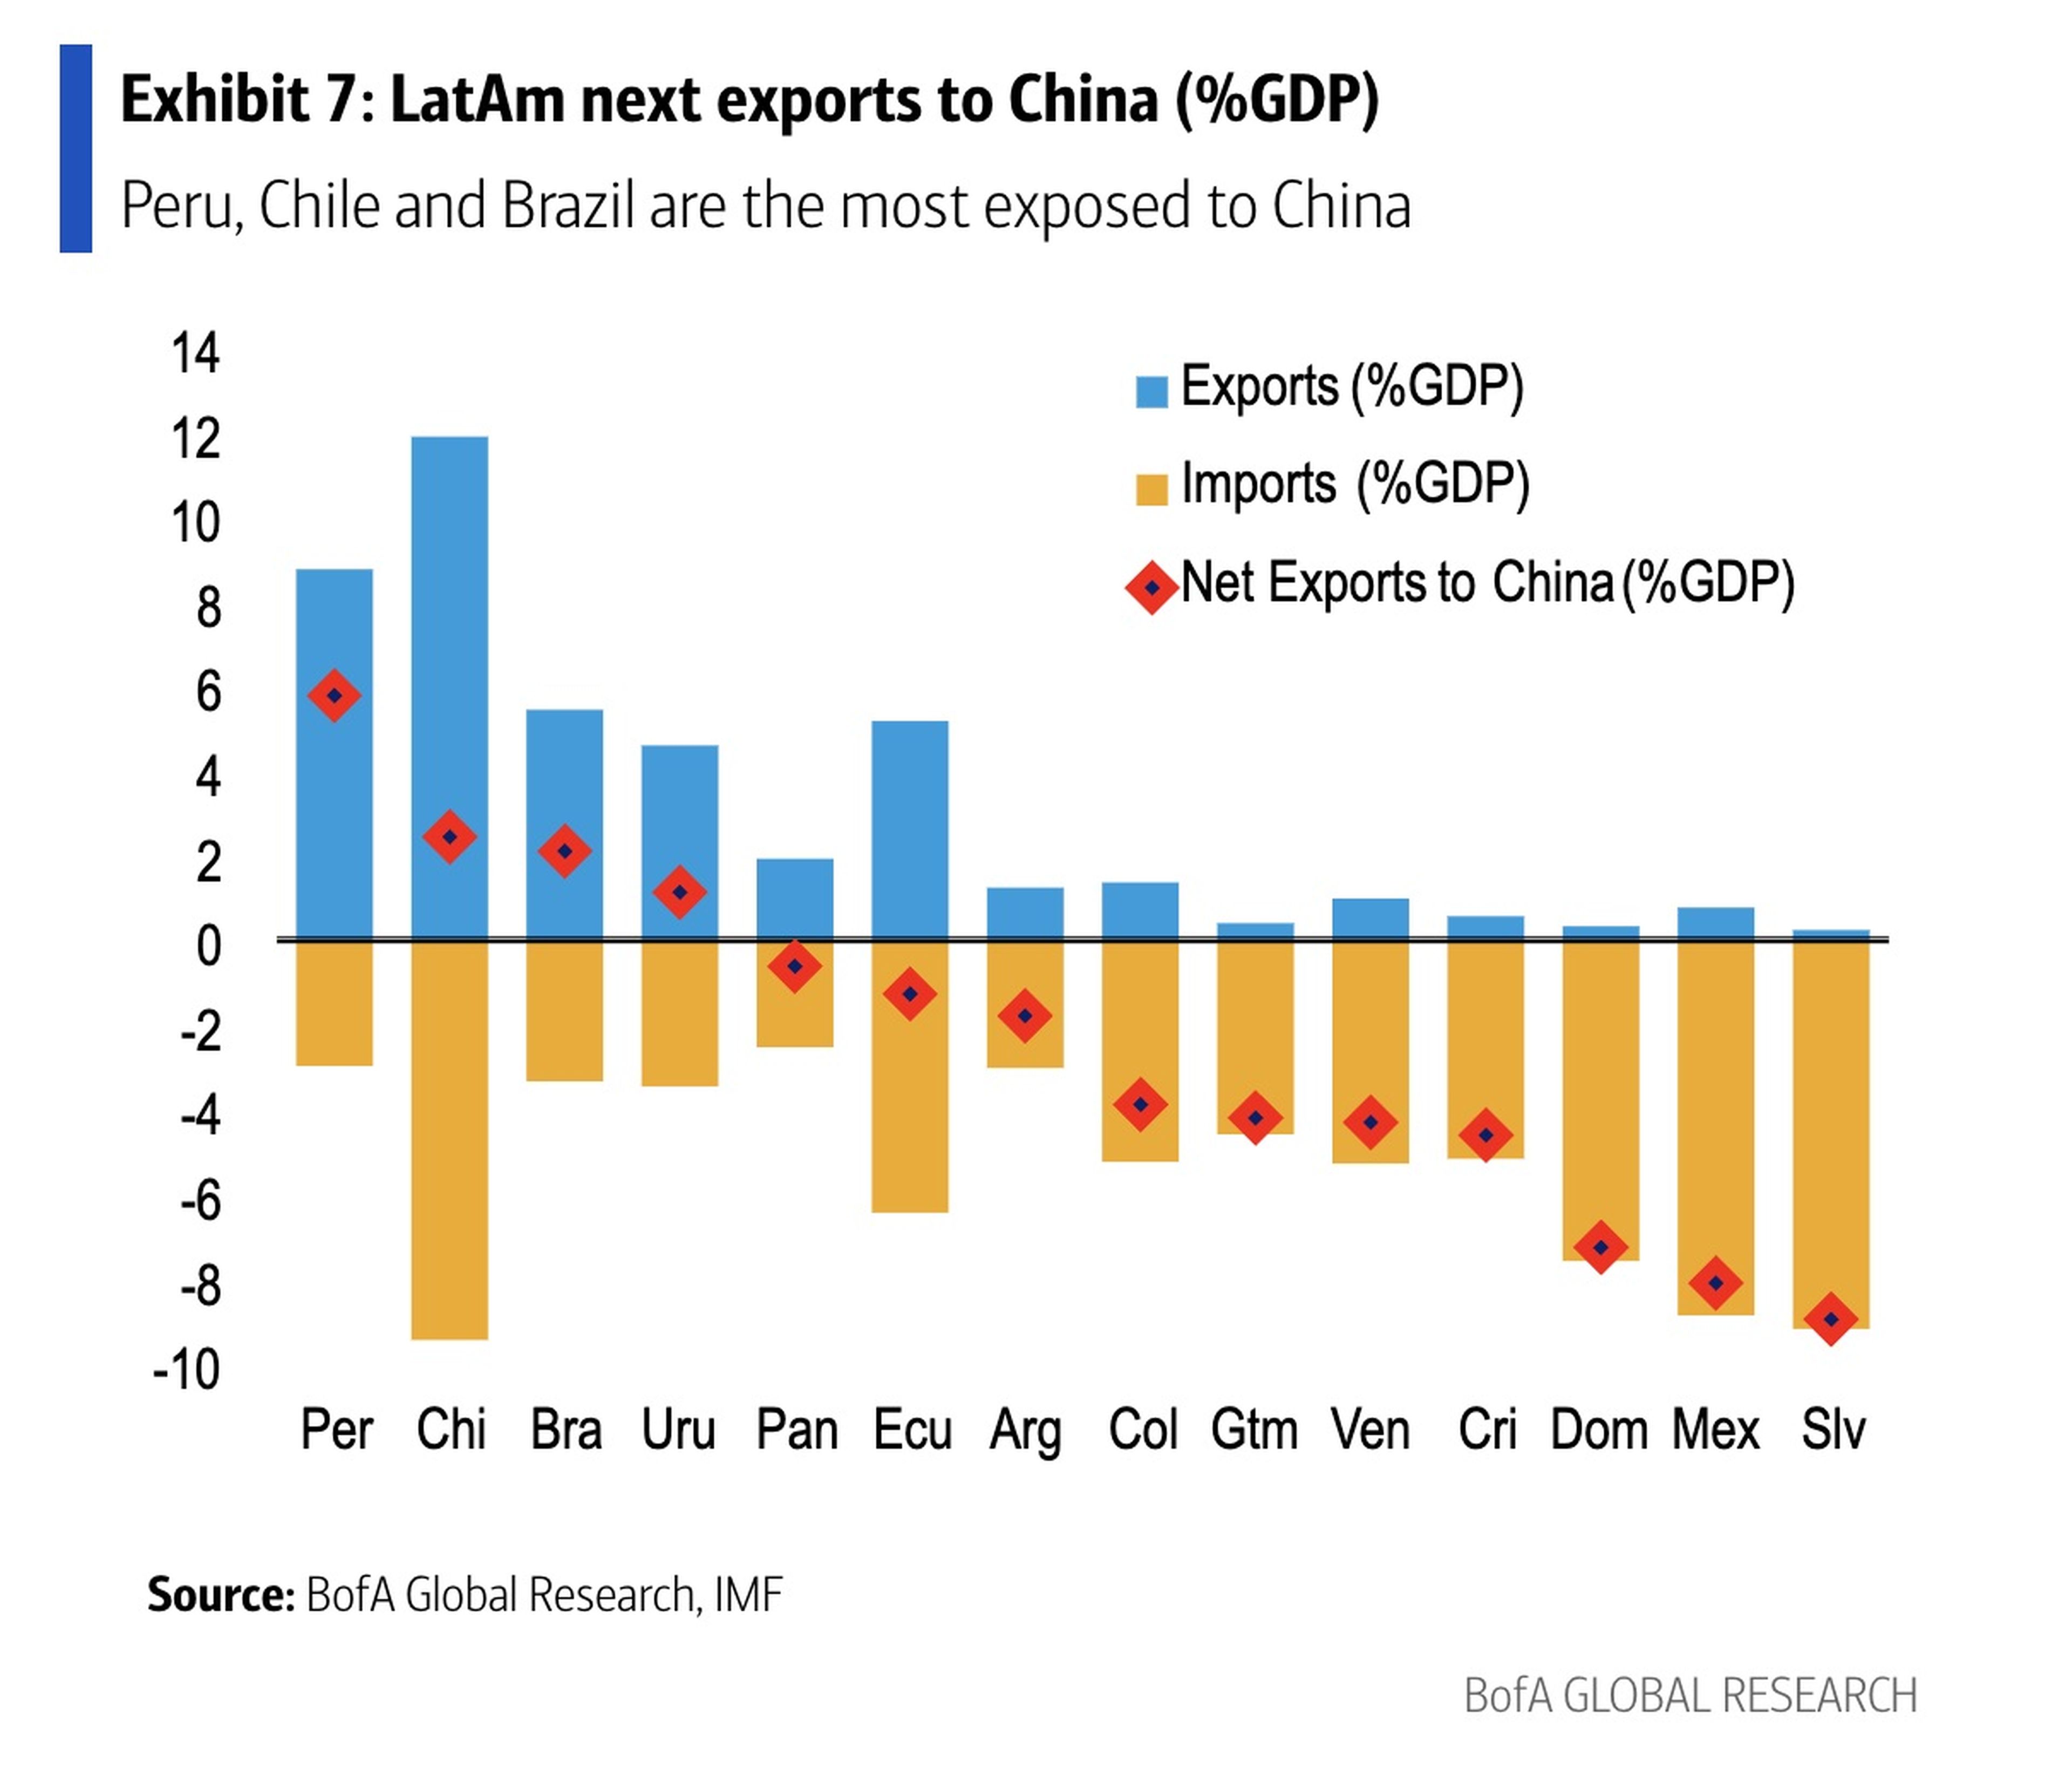 Nuevas exportaciones de Latinoamérica a China (%PIB): "Perú, Chile y Brasil son los más expuestos ante China".